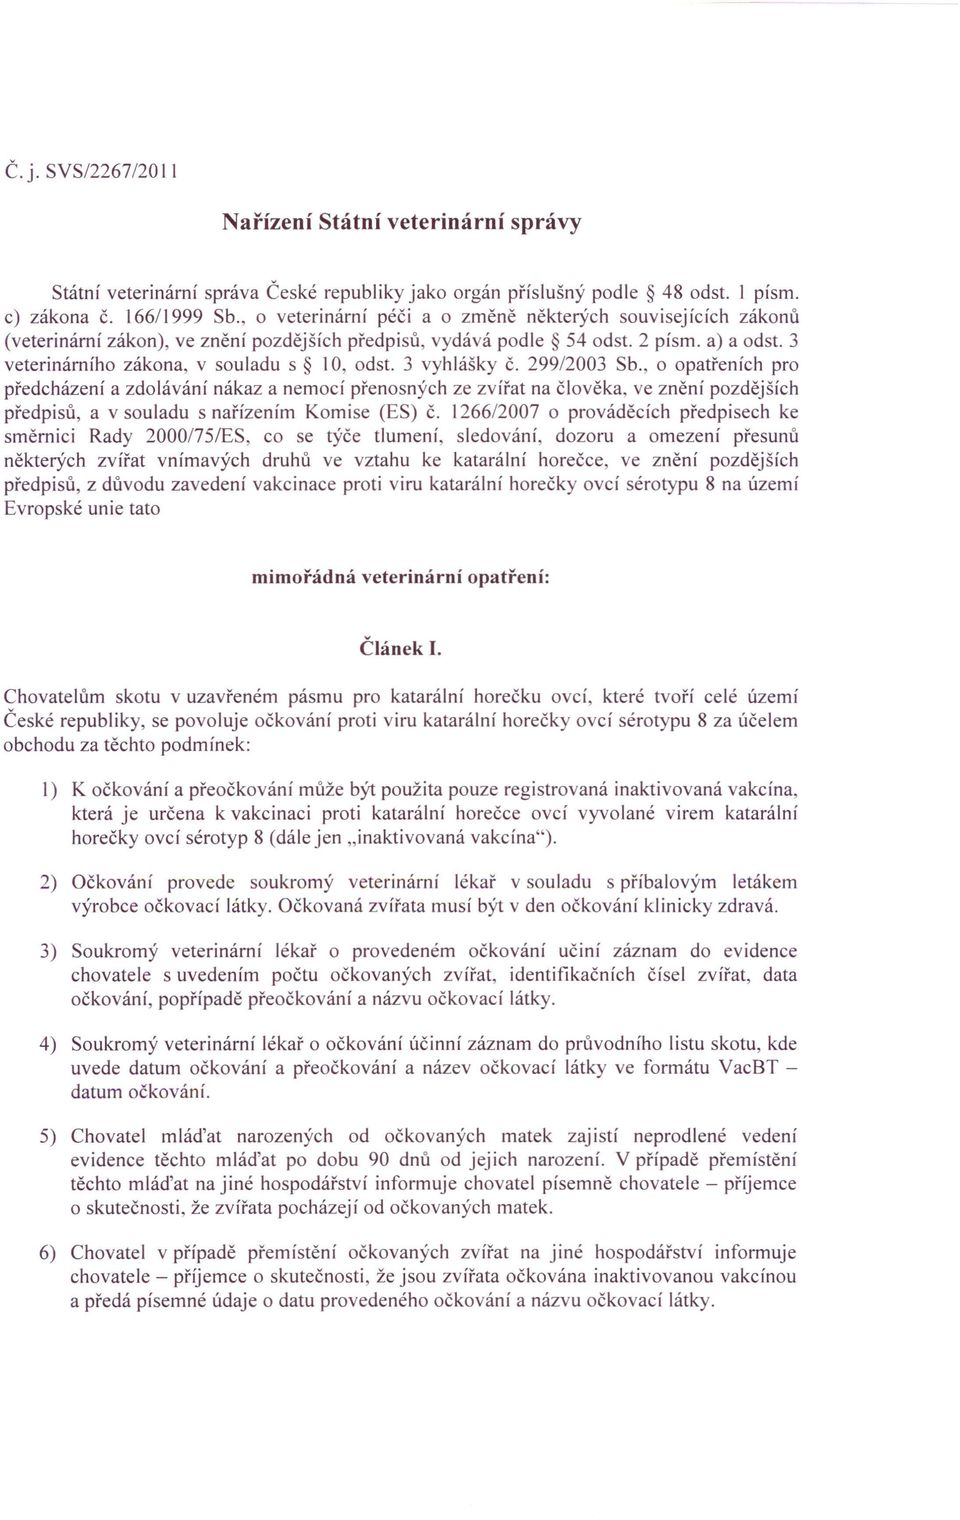 3 vyhlášky Č. 299/2003 Sb., o opatřeních pro předcházení a zdolávání nákaz a nemocí přenosných ze zvířat na člověka, ve znění pozdějších předpisů, a v souladu s nařízením Komise (ES) Č.